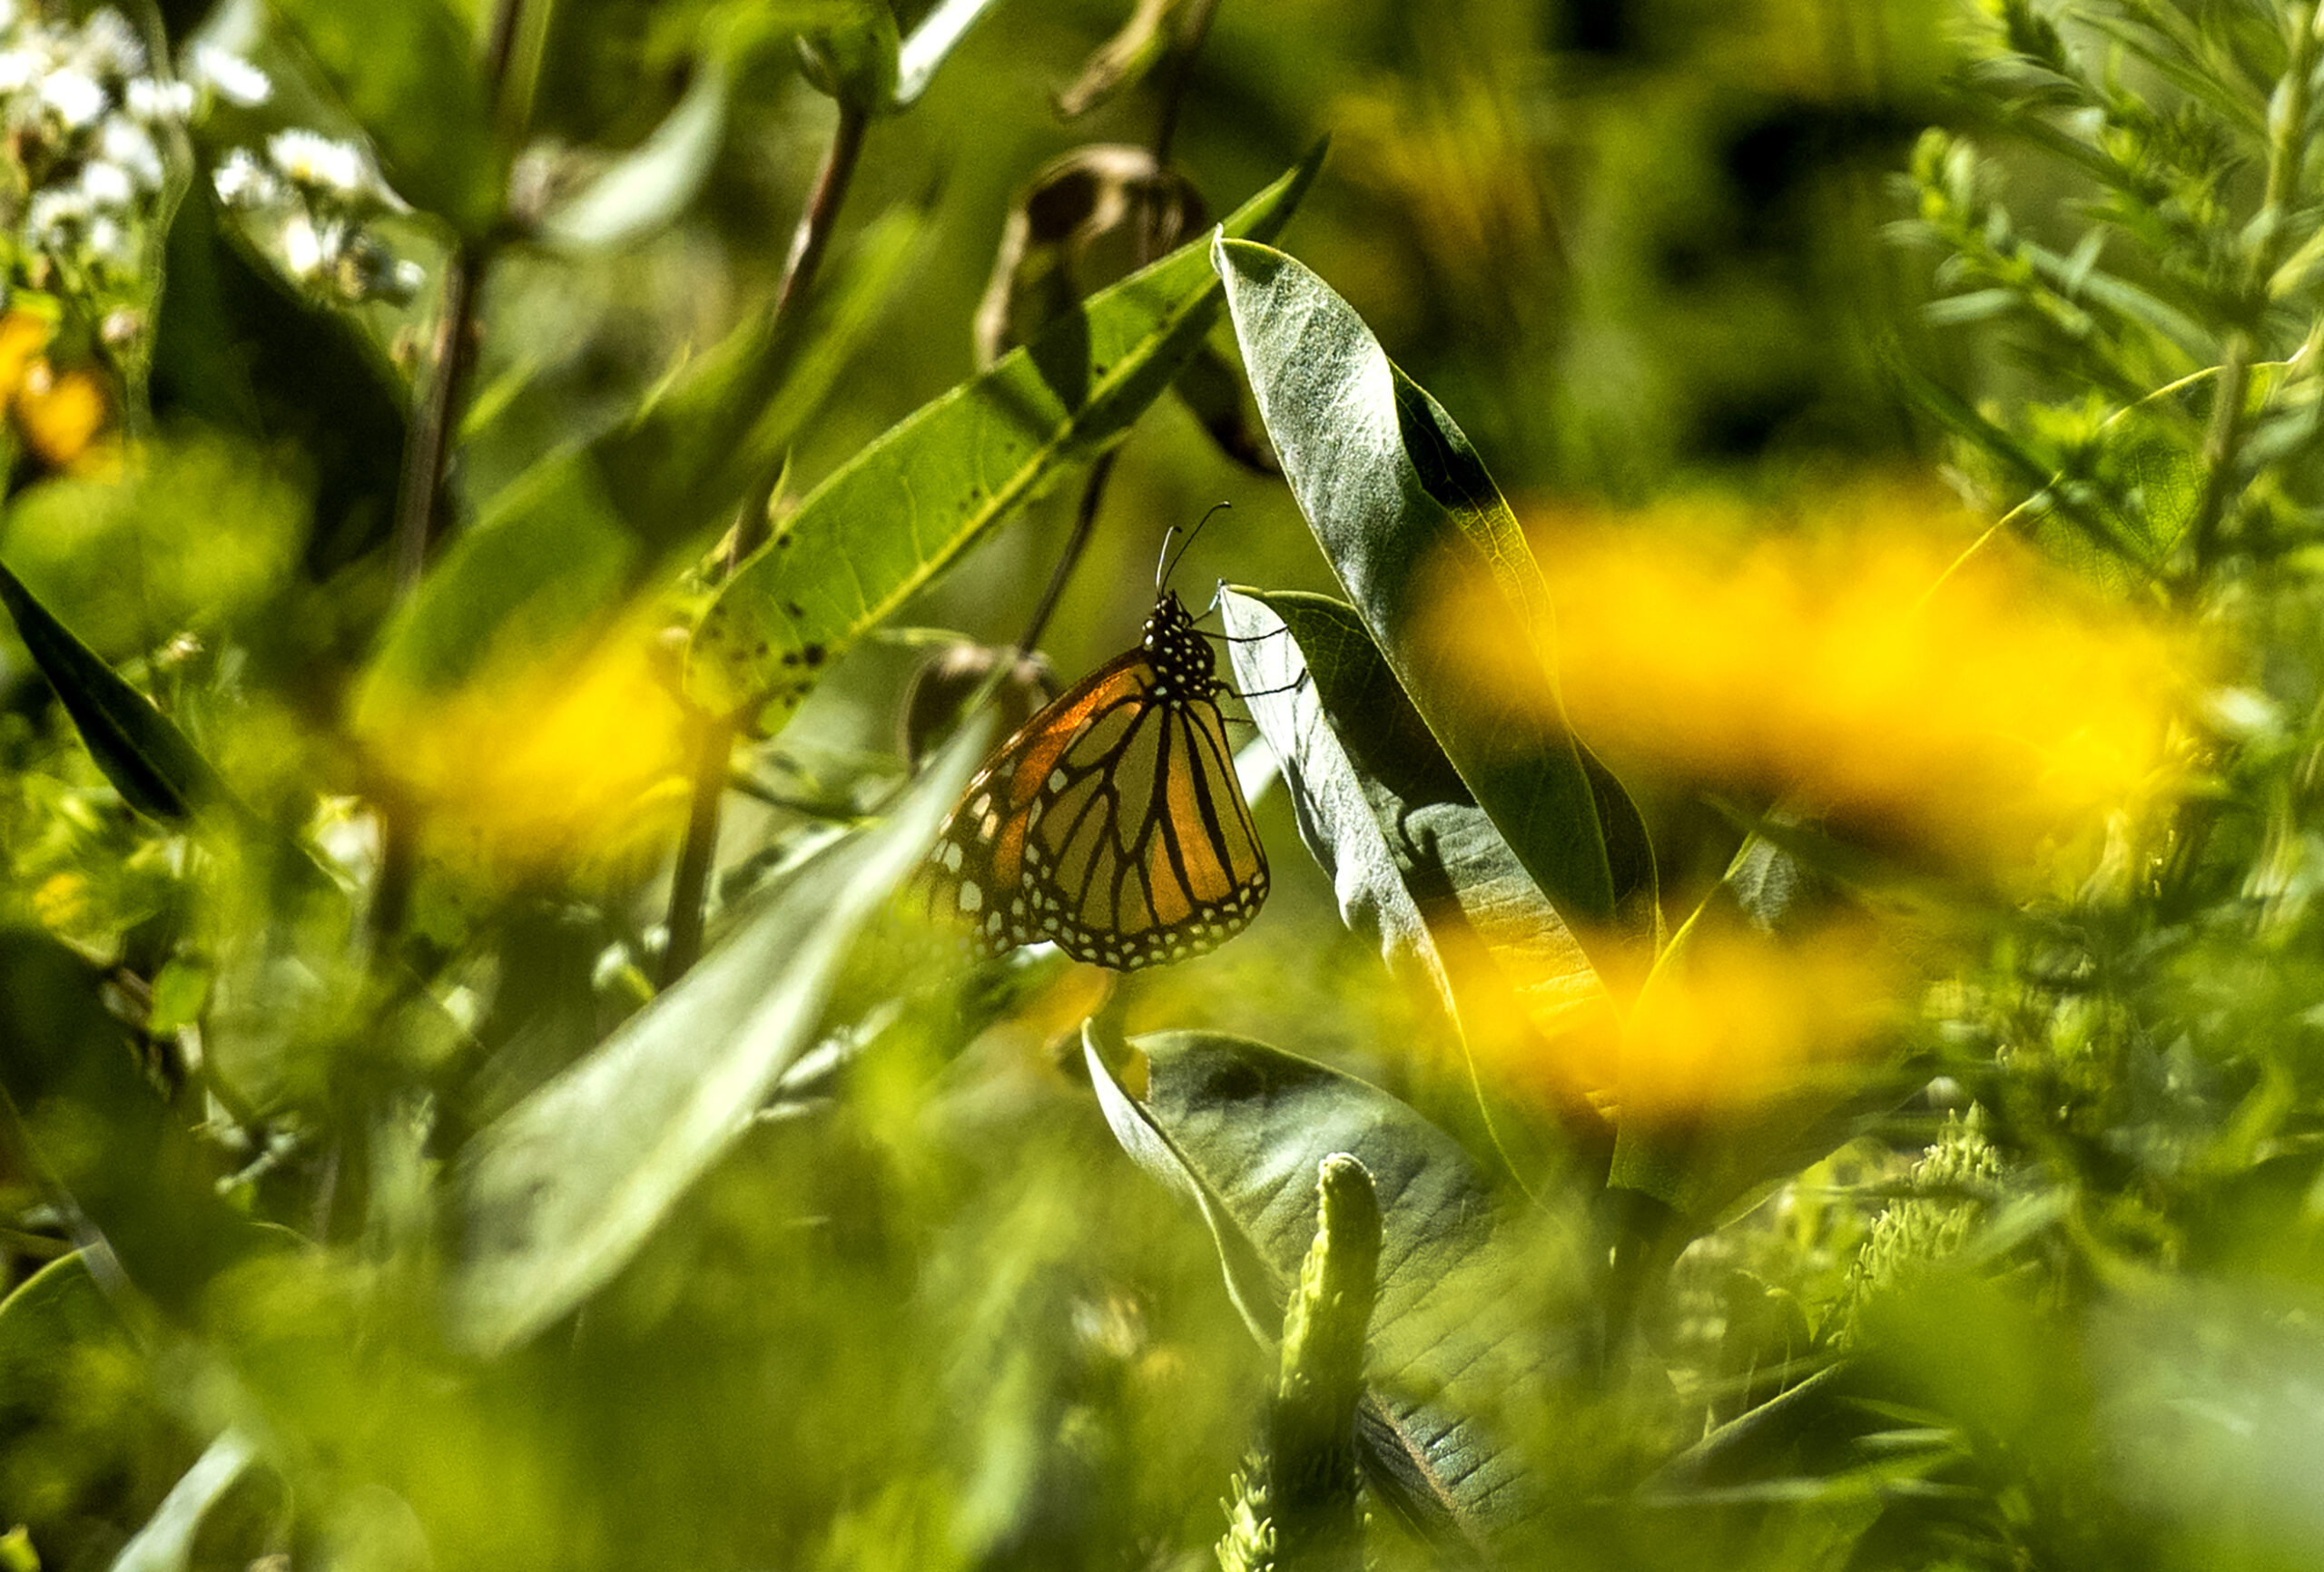 An orange butterfly hangs on to a green leaf in a field.